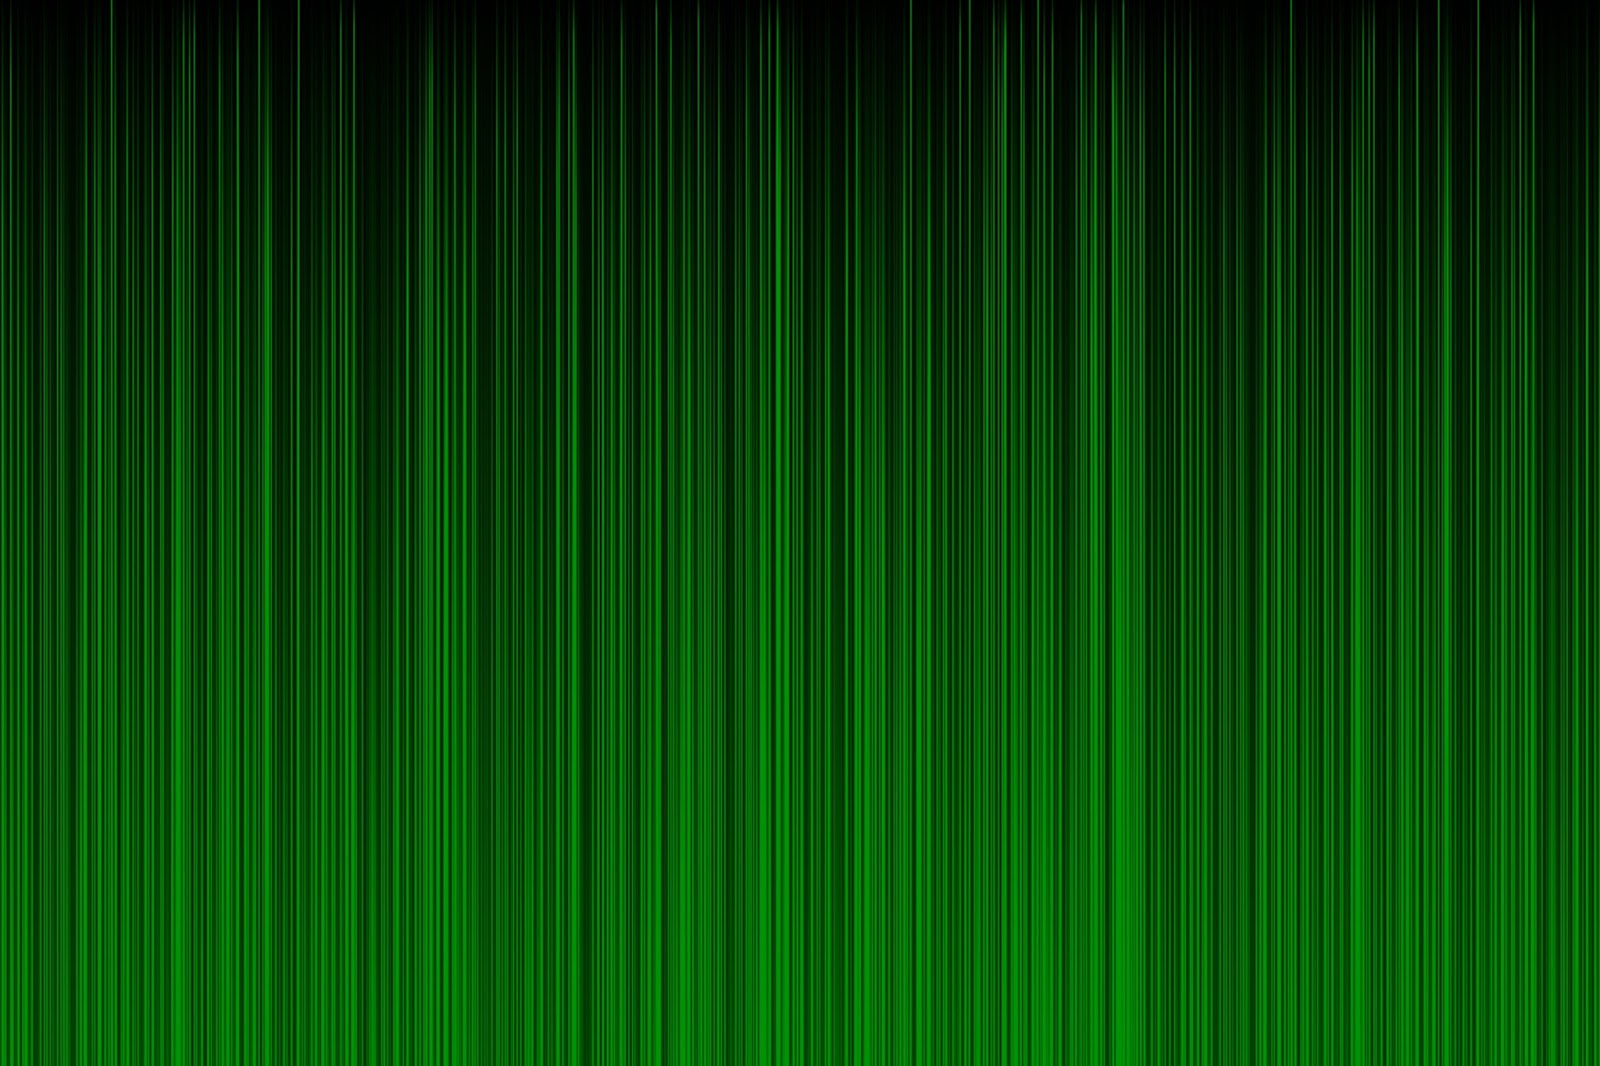 wallpaper warna hijau,green,leaf,line,textile,pattern